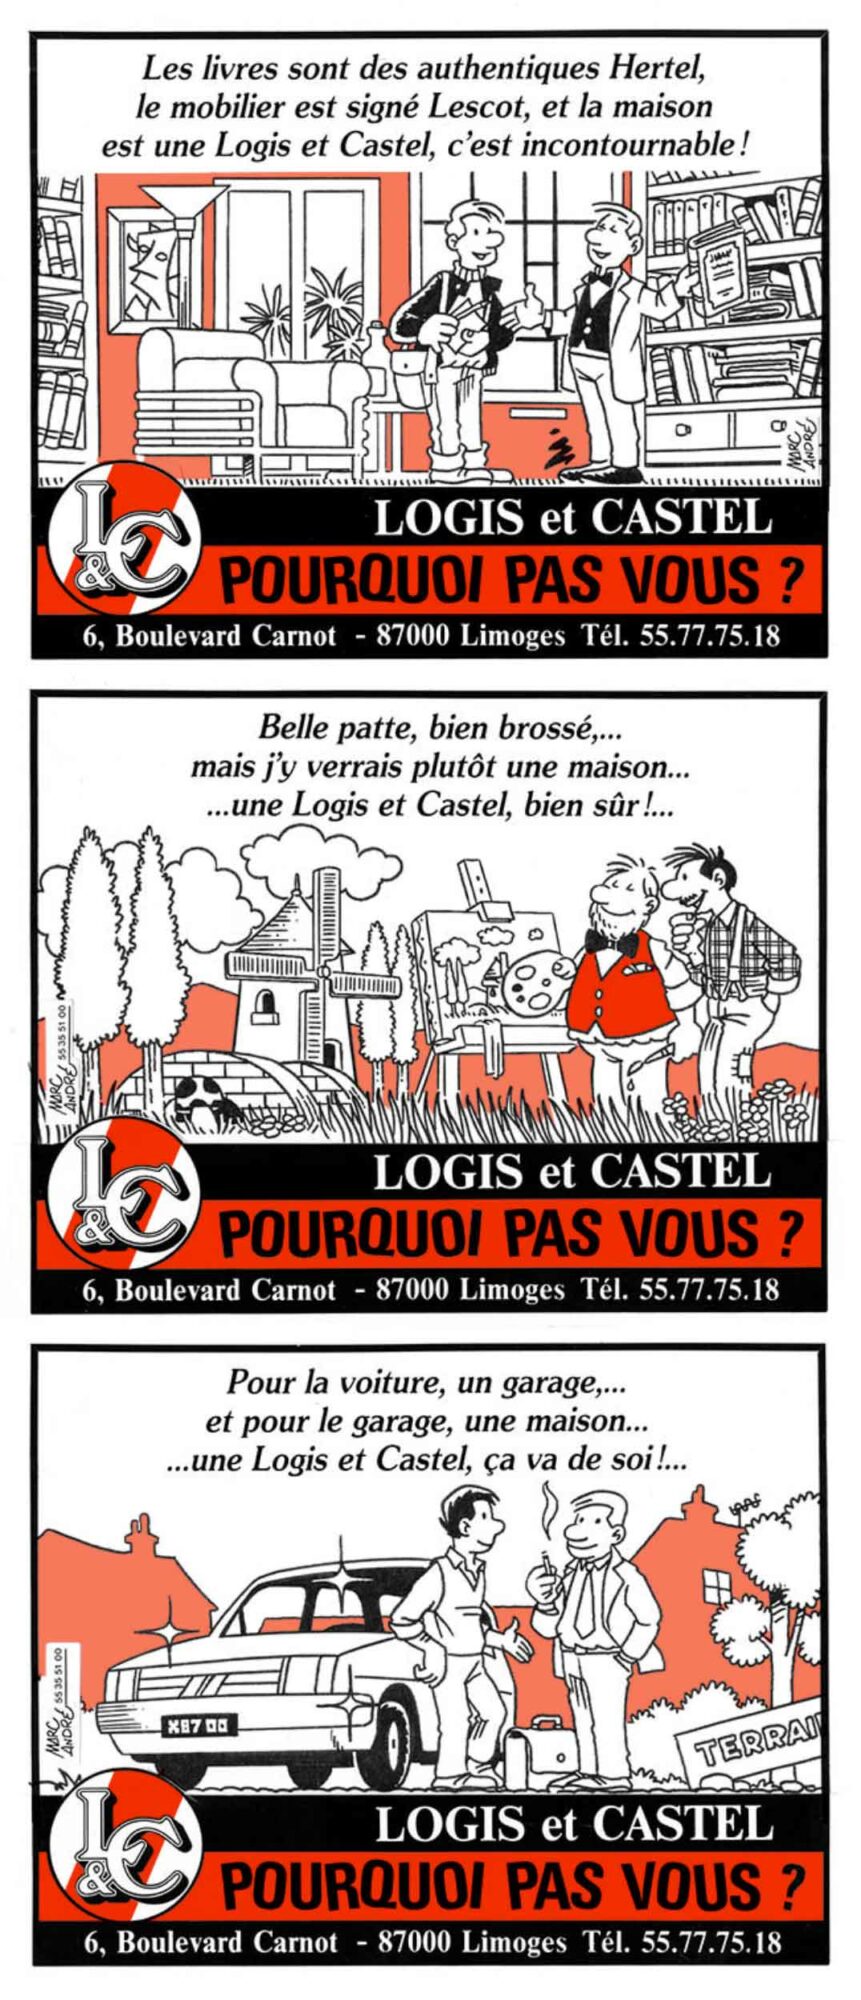 Pourquoi pas vous ? - Maisons Logis & Castel 1991 - Marc-André BD Illustration Graphisme Limoges